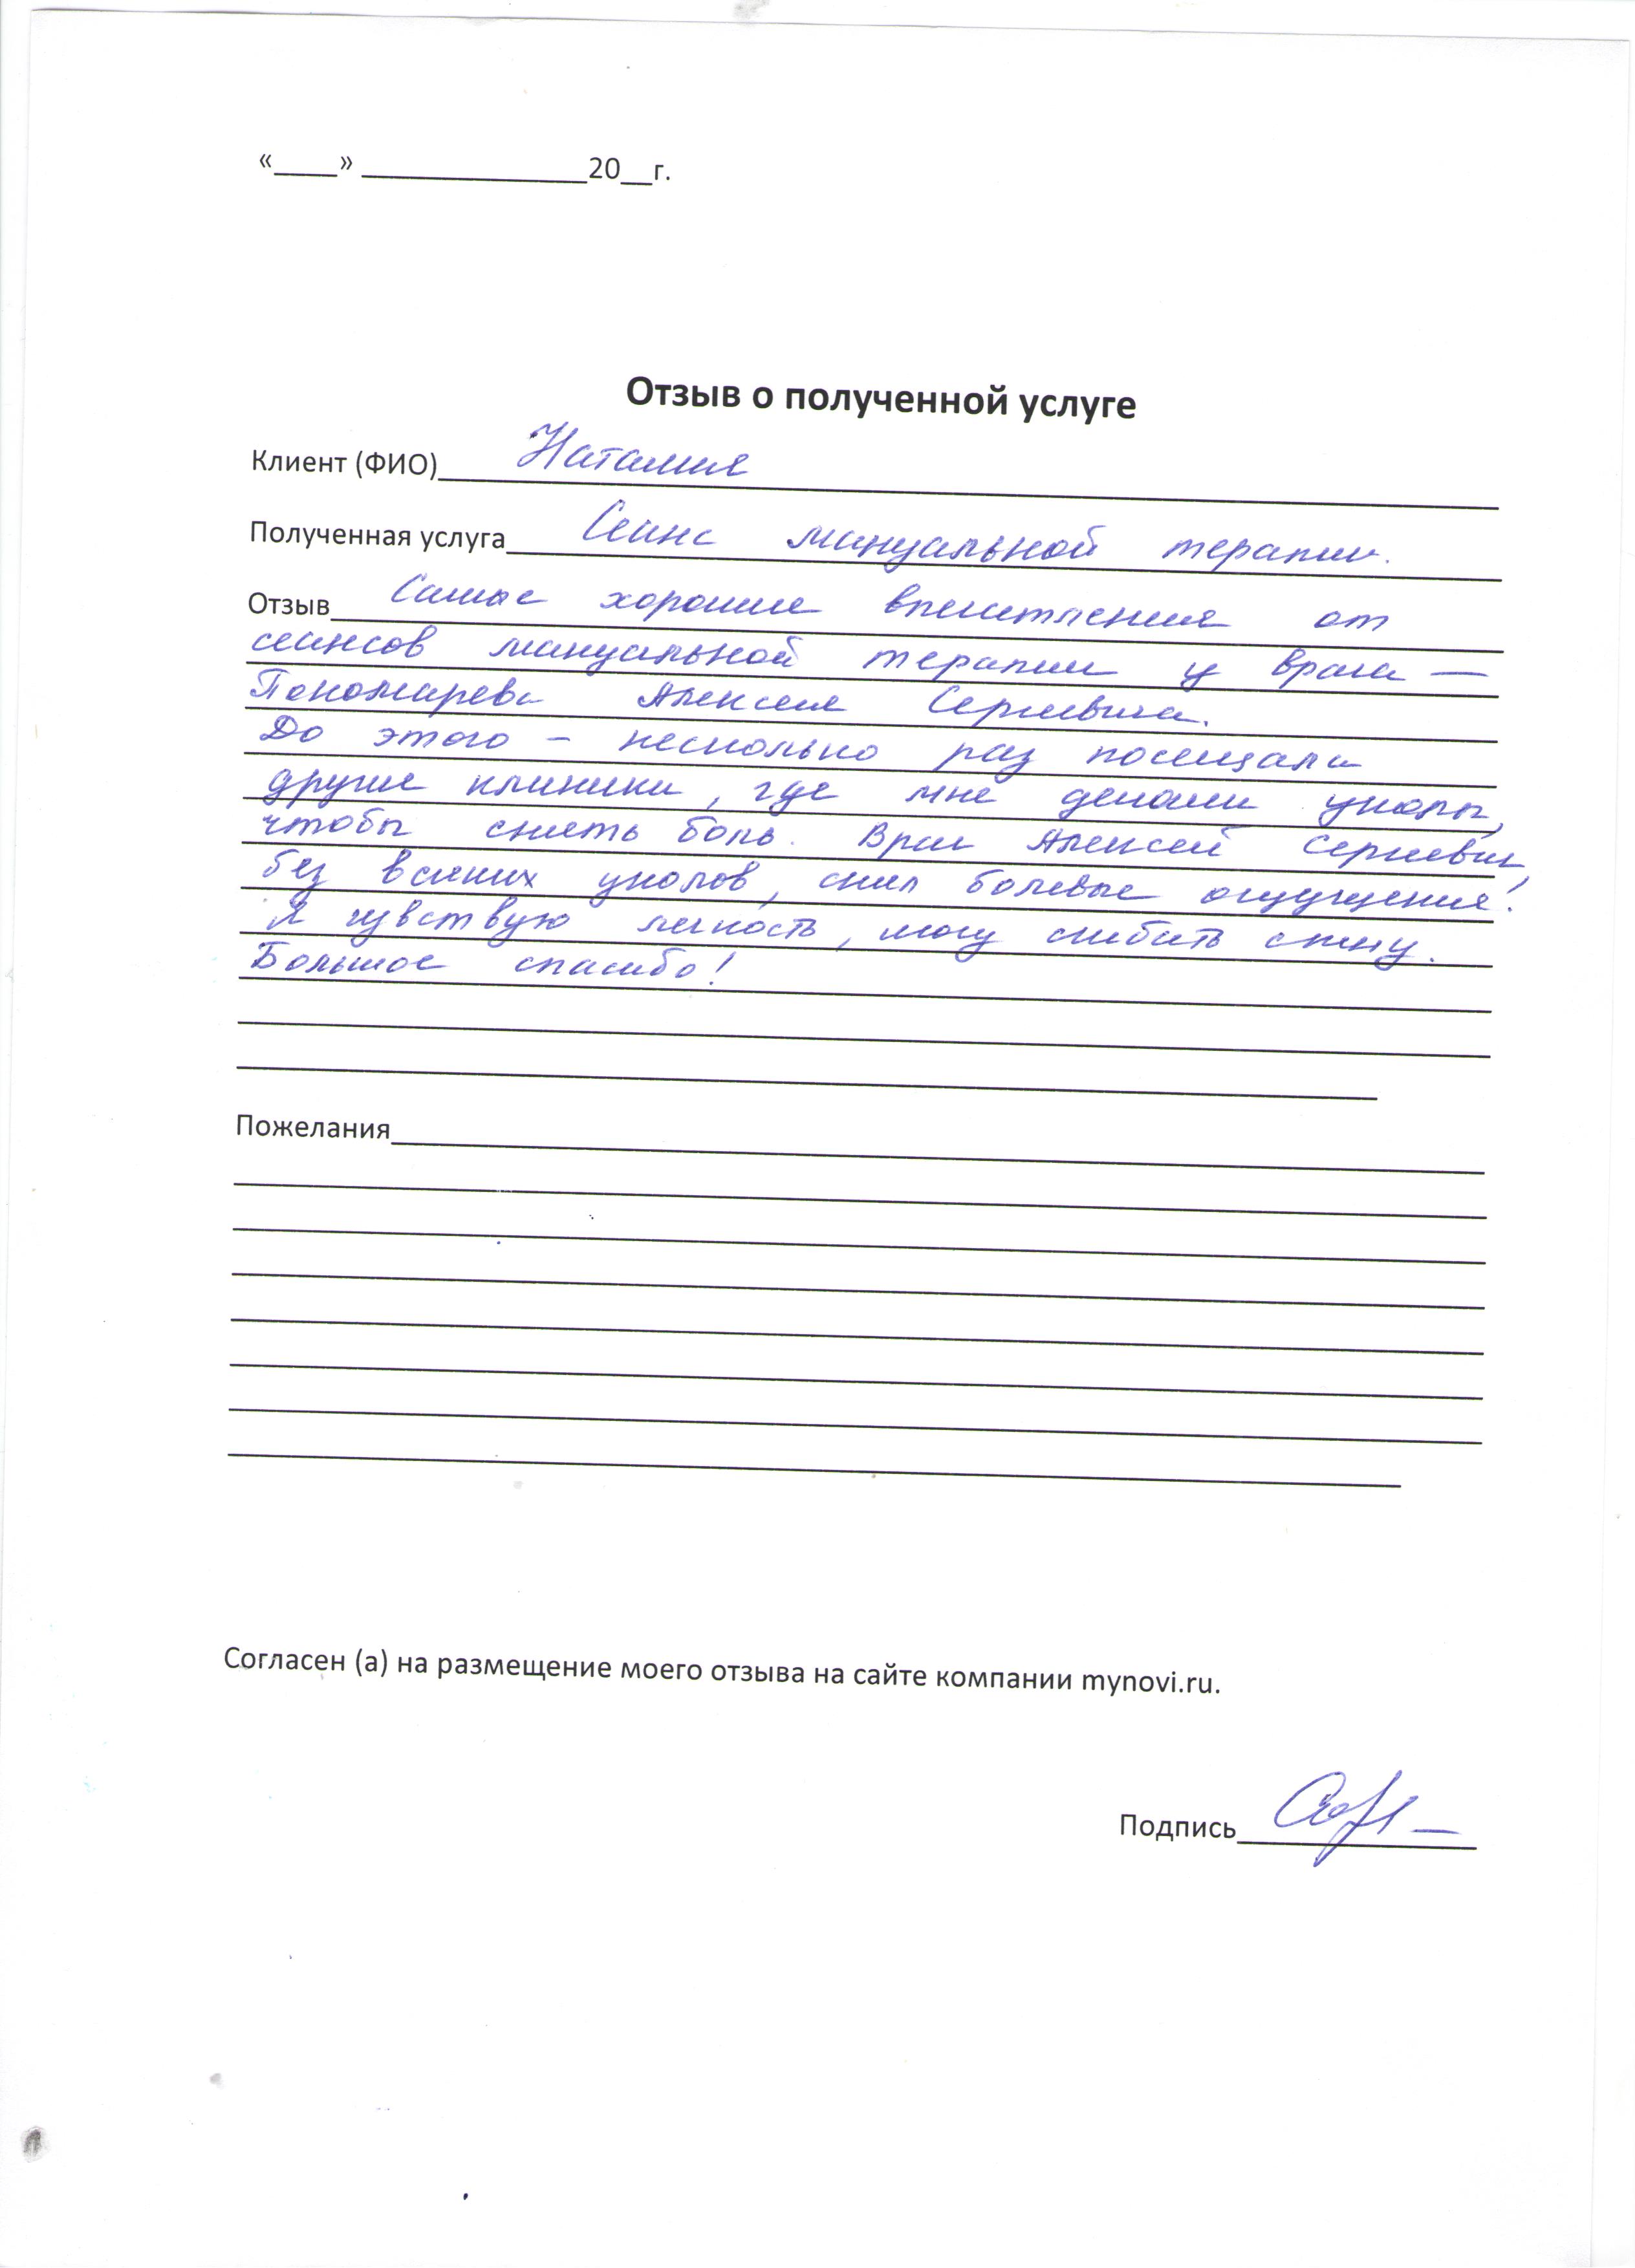 Отзывы о Пономареве Алексее Сергеевиче от пациента Николай